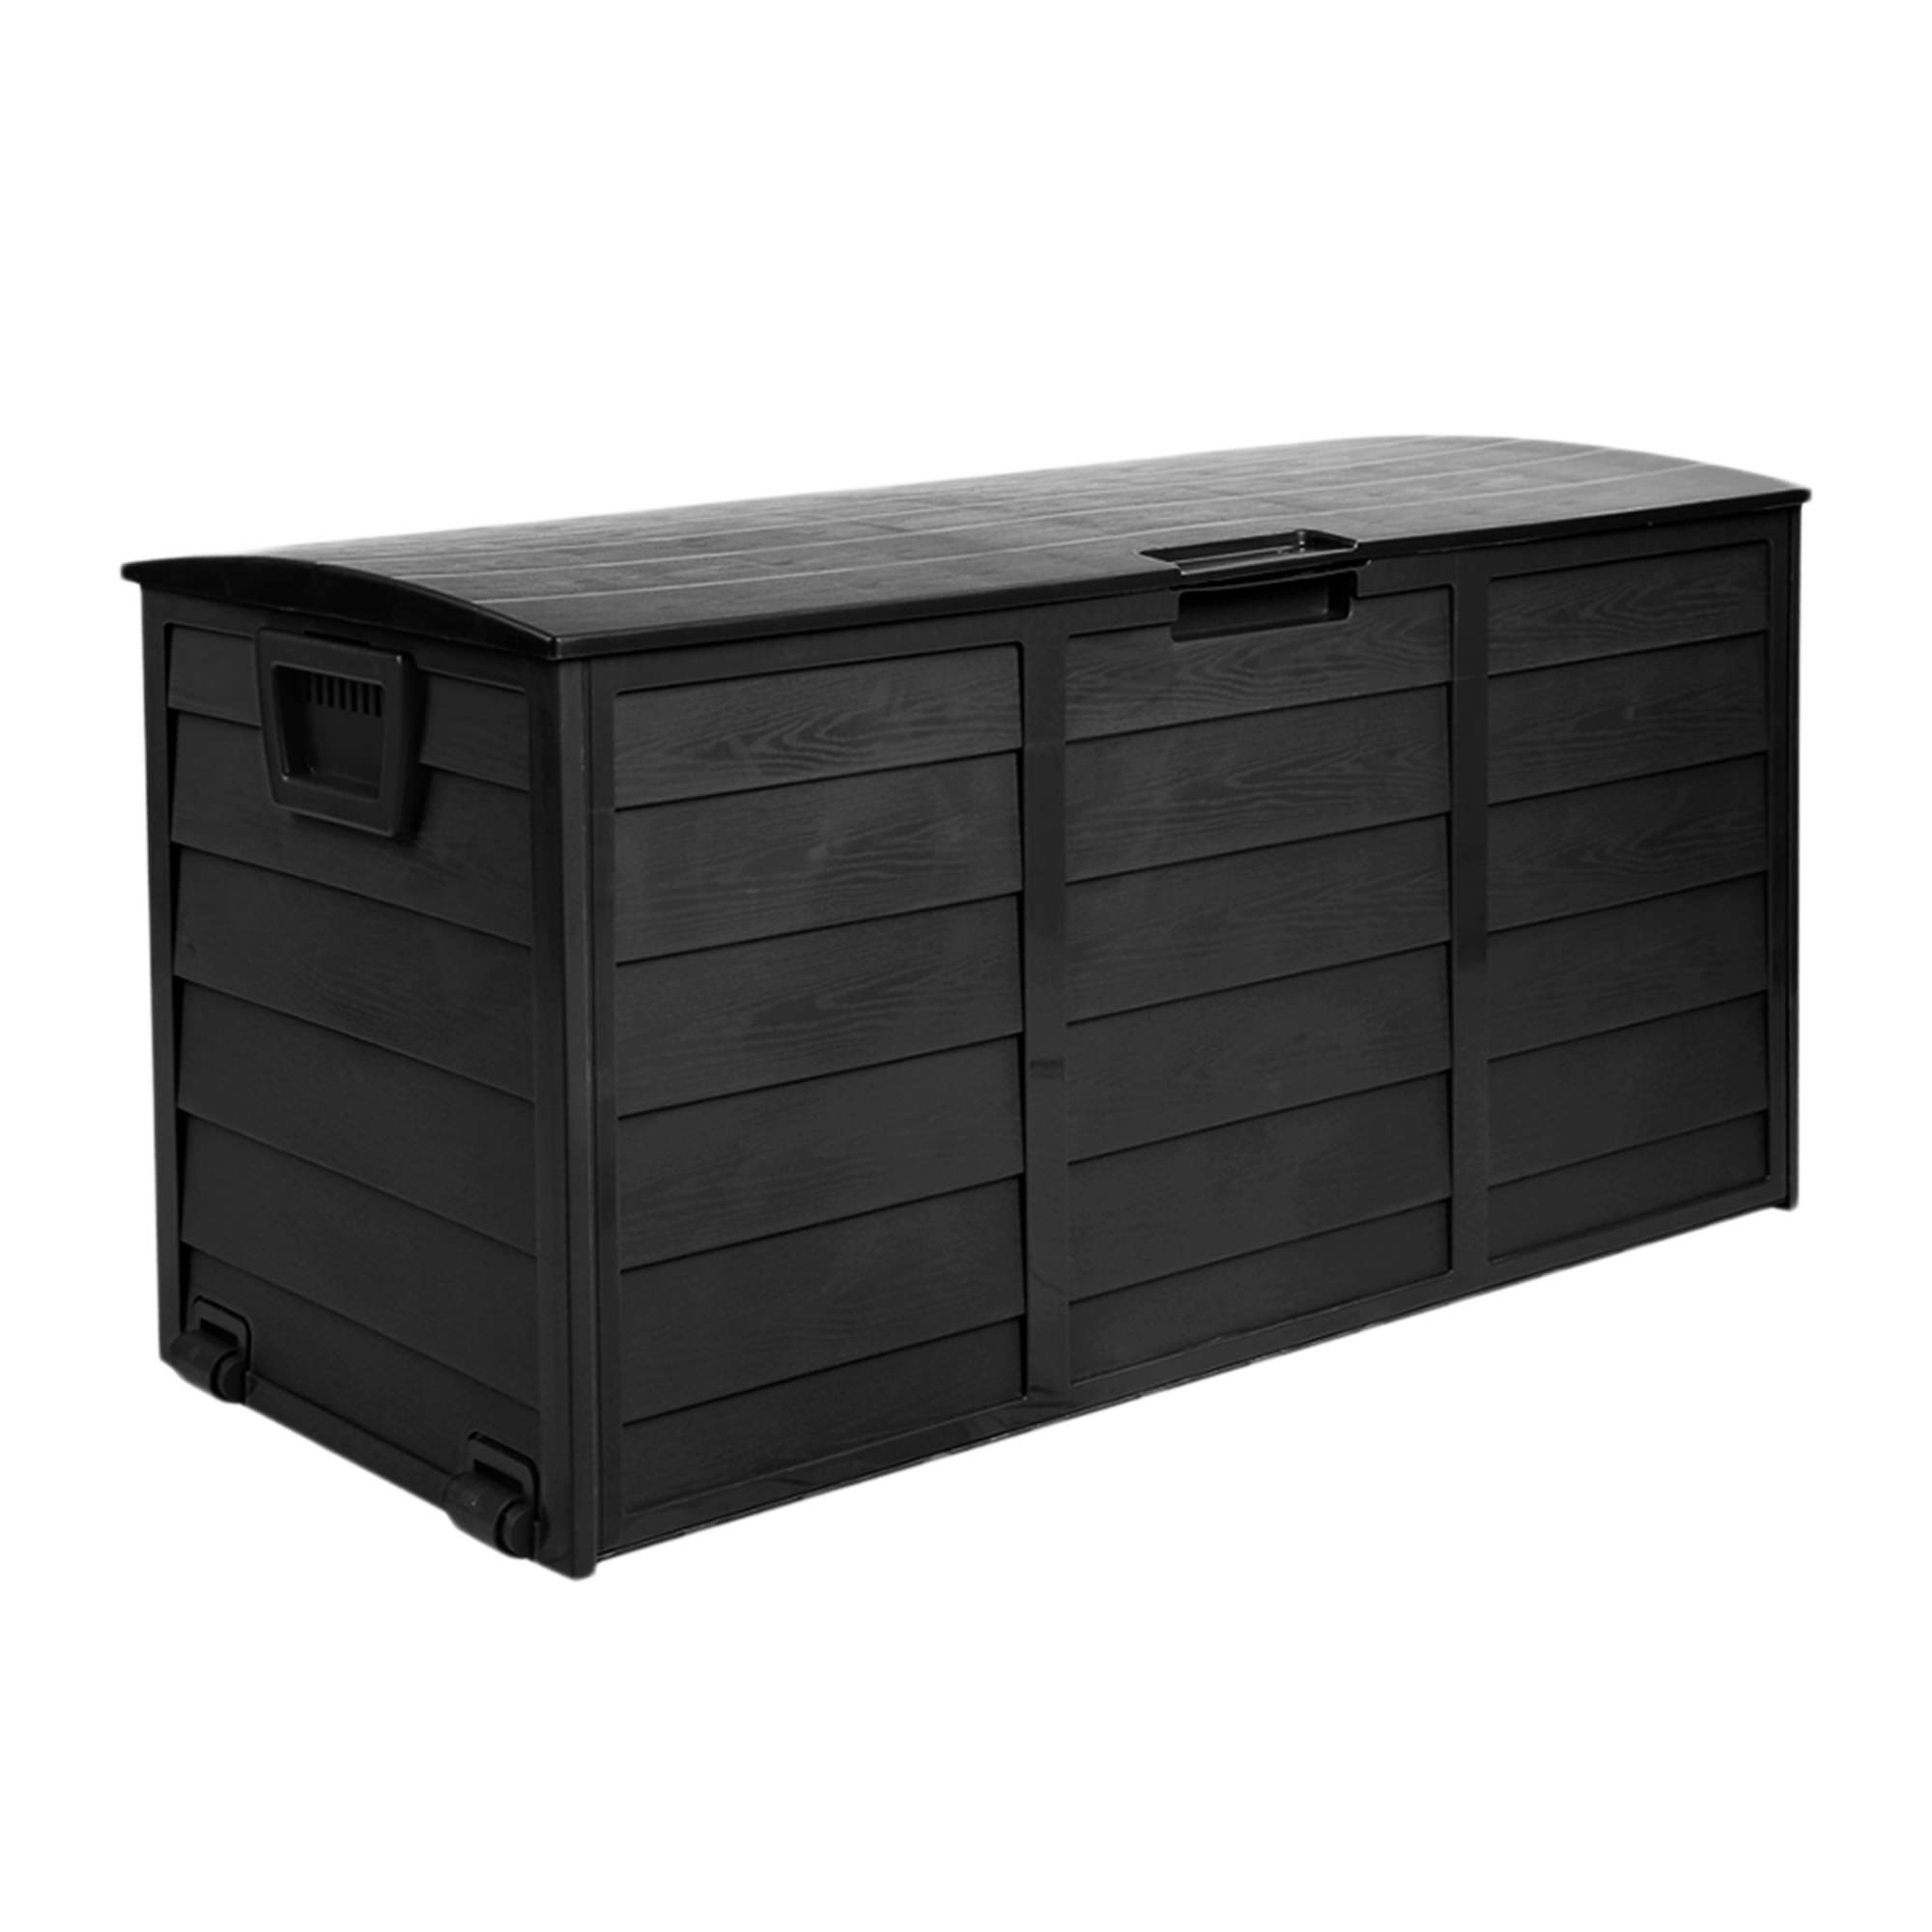 Gardeon Giantz Outdoor Storage Box 290L Black Image 1